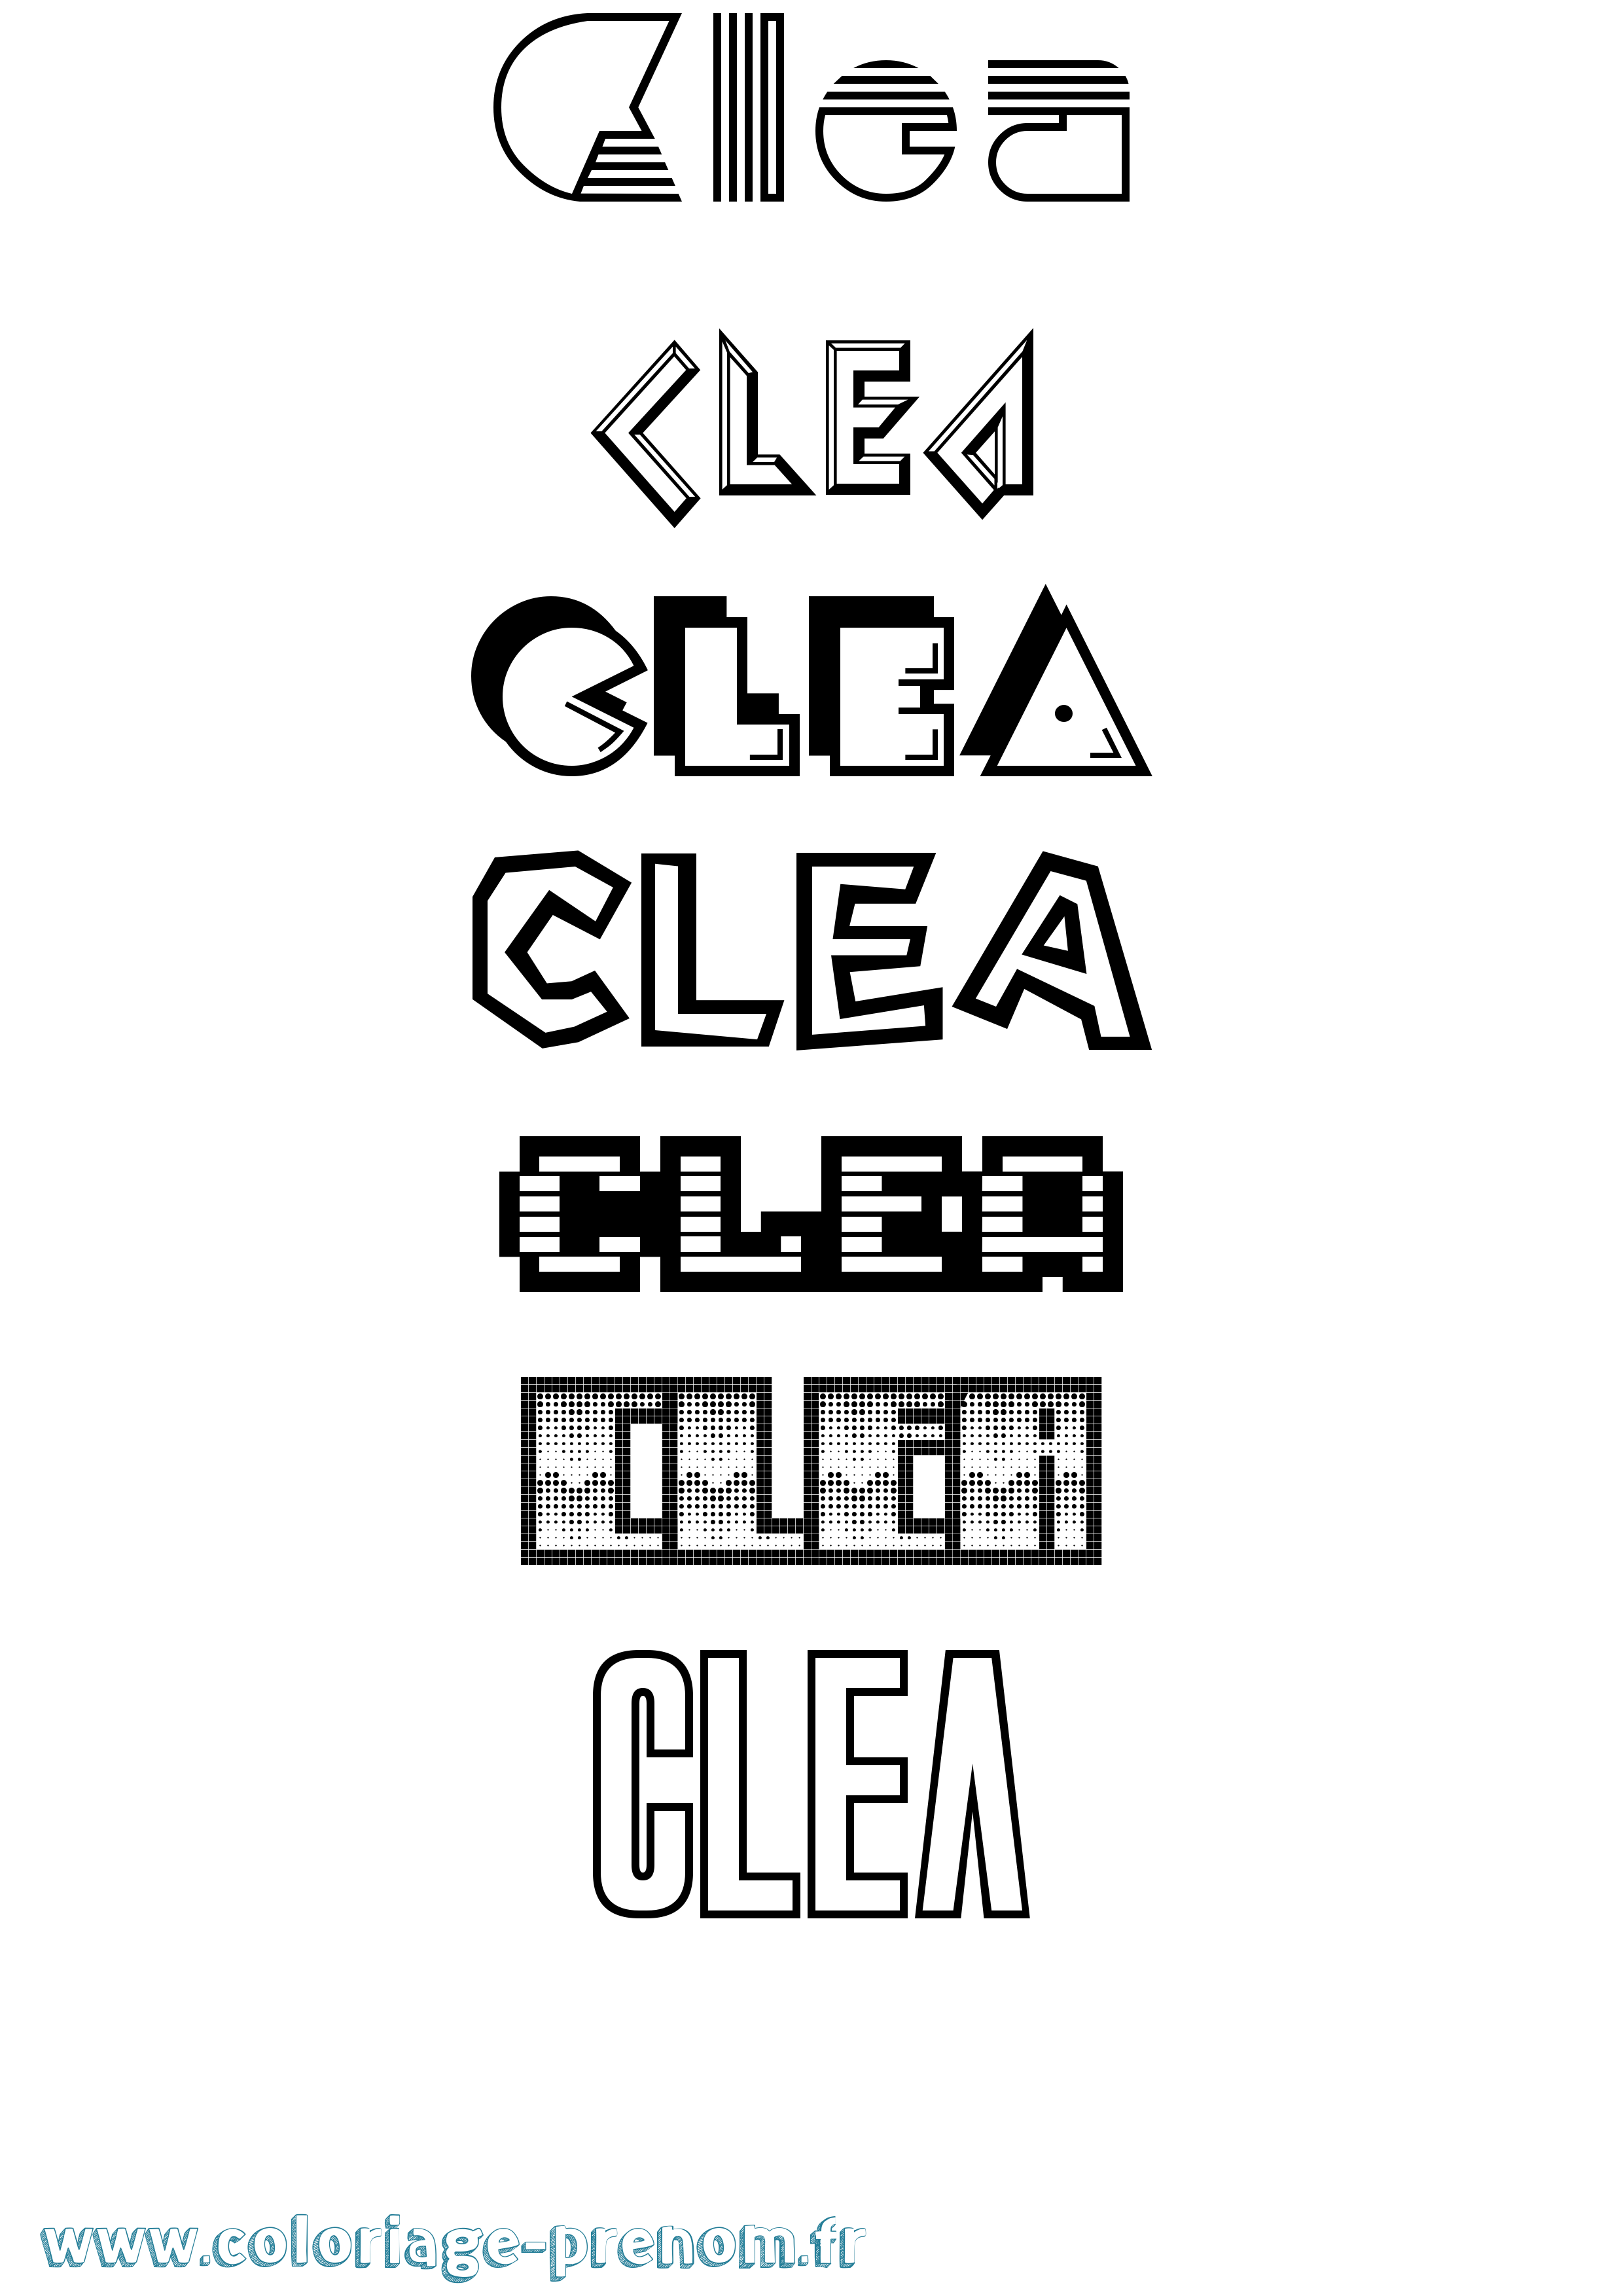 Coloriage prénom Clea